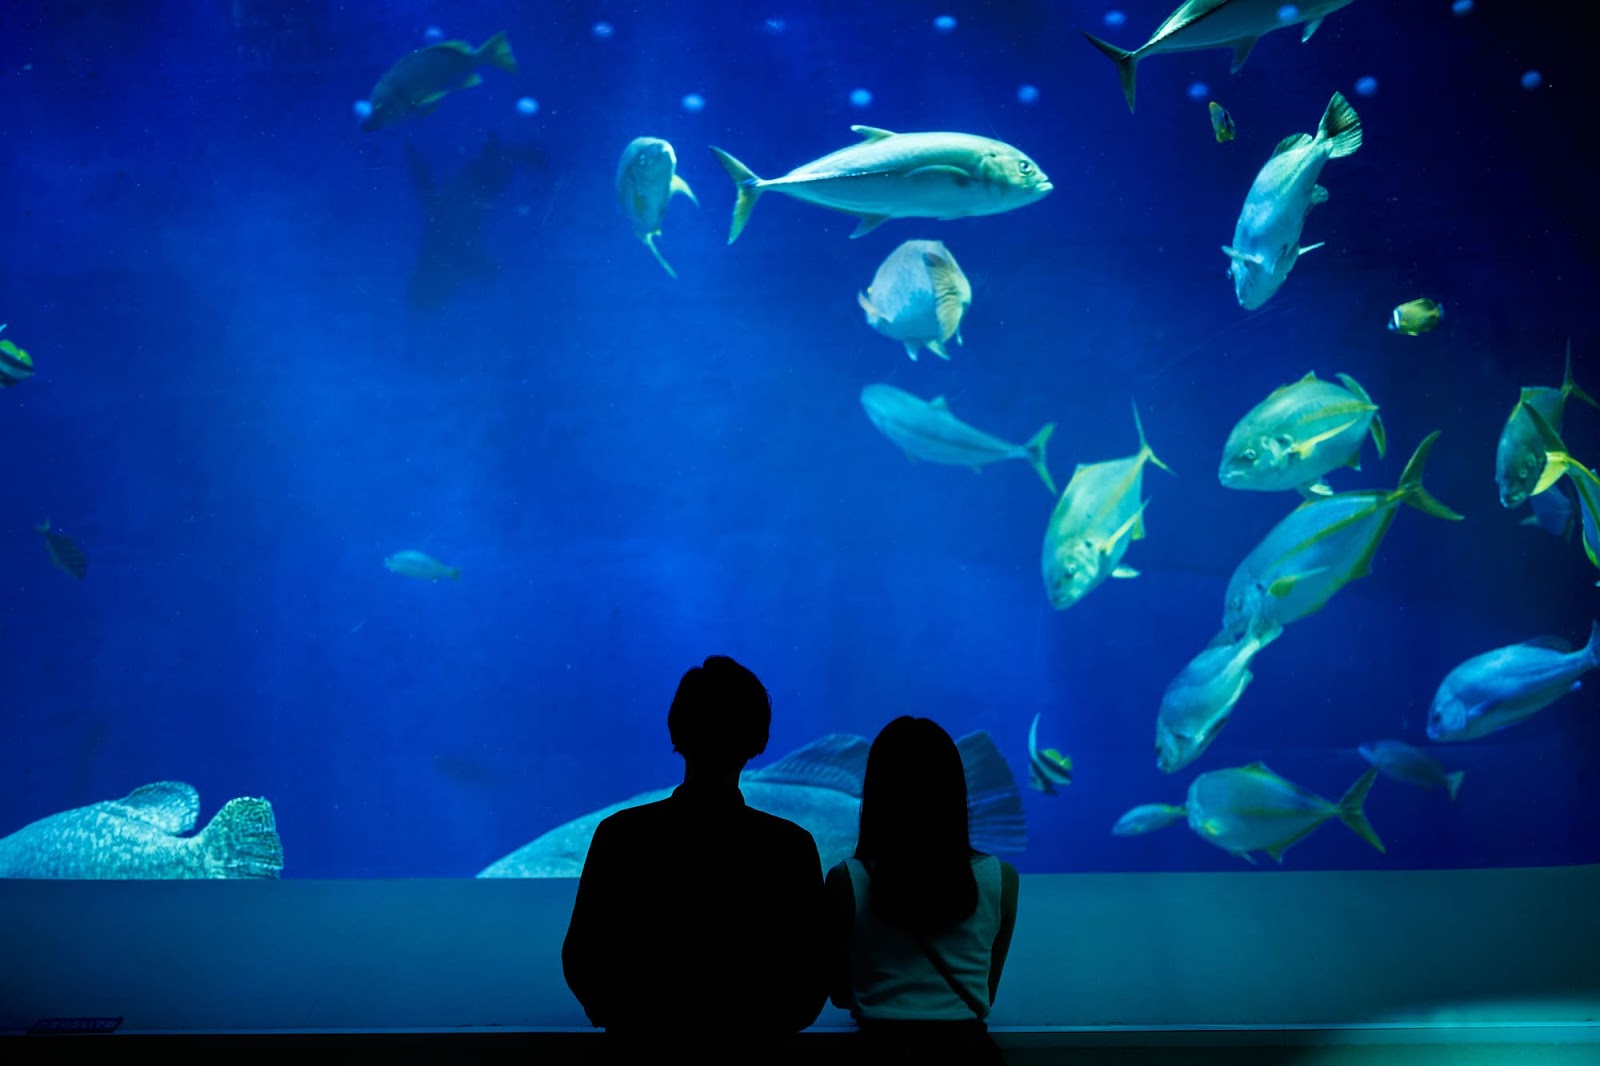 2.薄暗い空間で魚を観察「屋内型水族館」